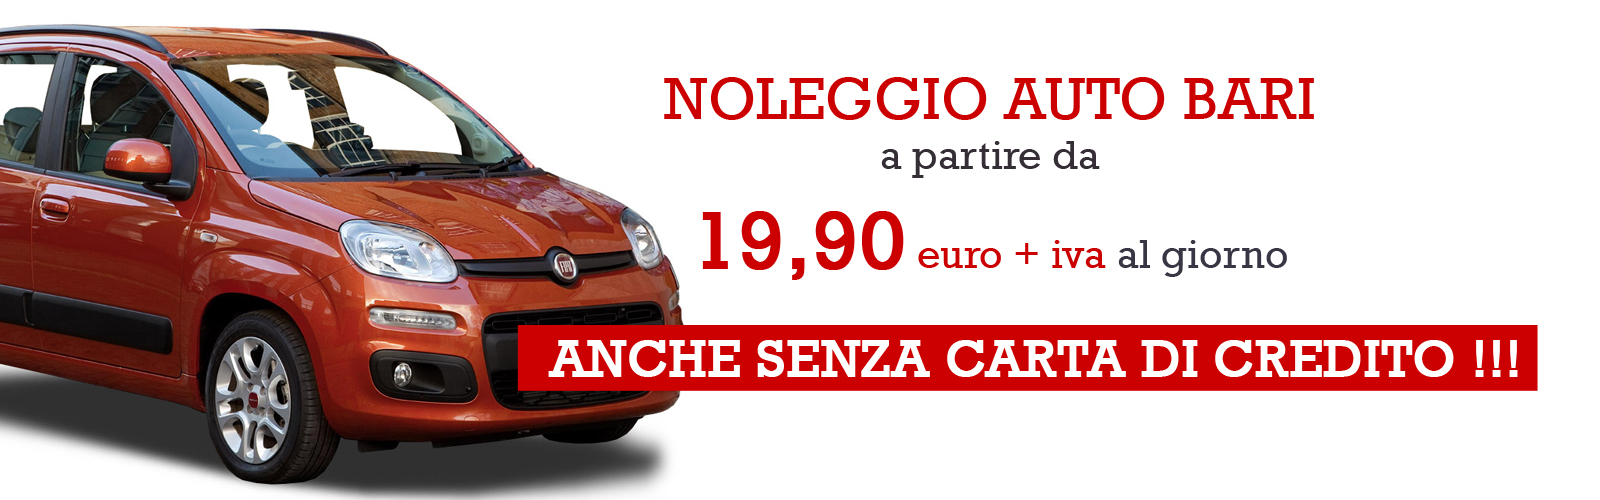 Auto e Nolo Bari - Noleggio auto Bari senza carta di credito a partire da 21 euro al giorno